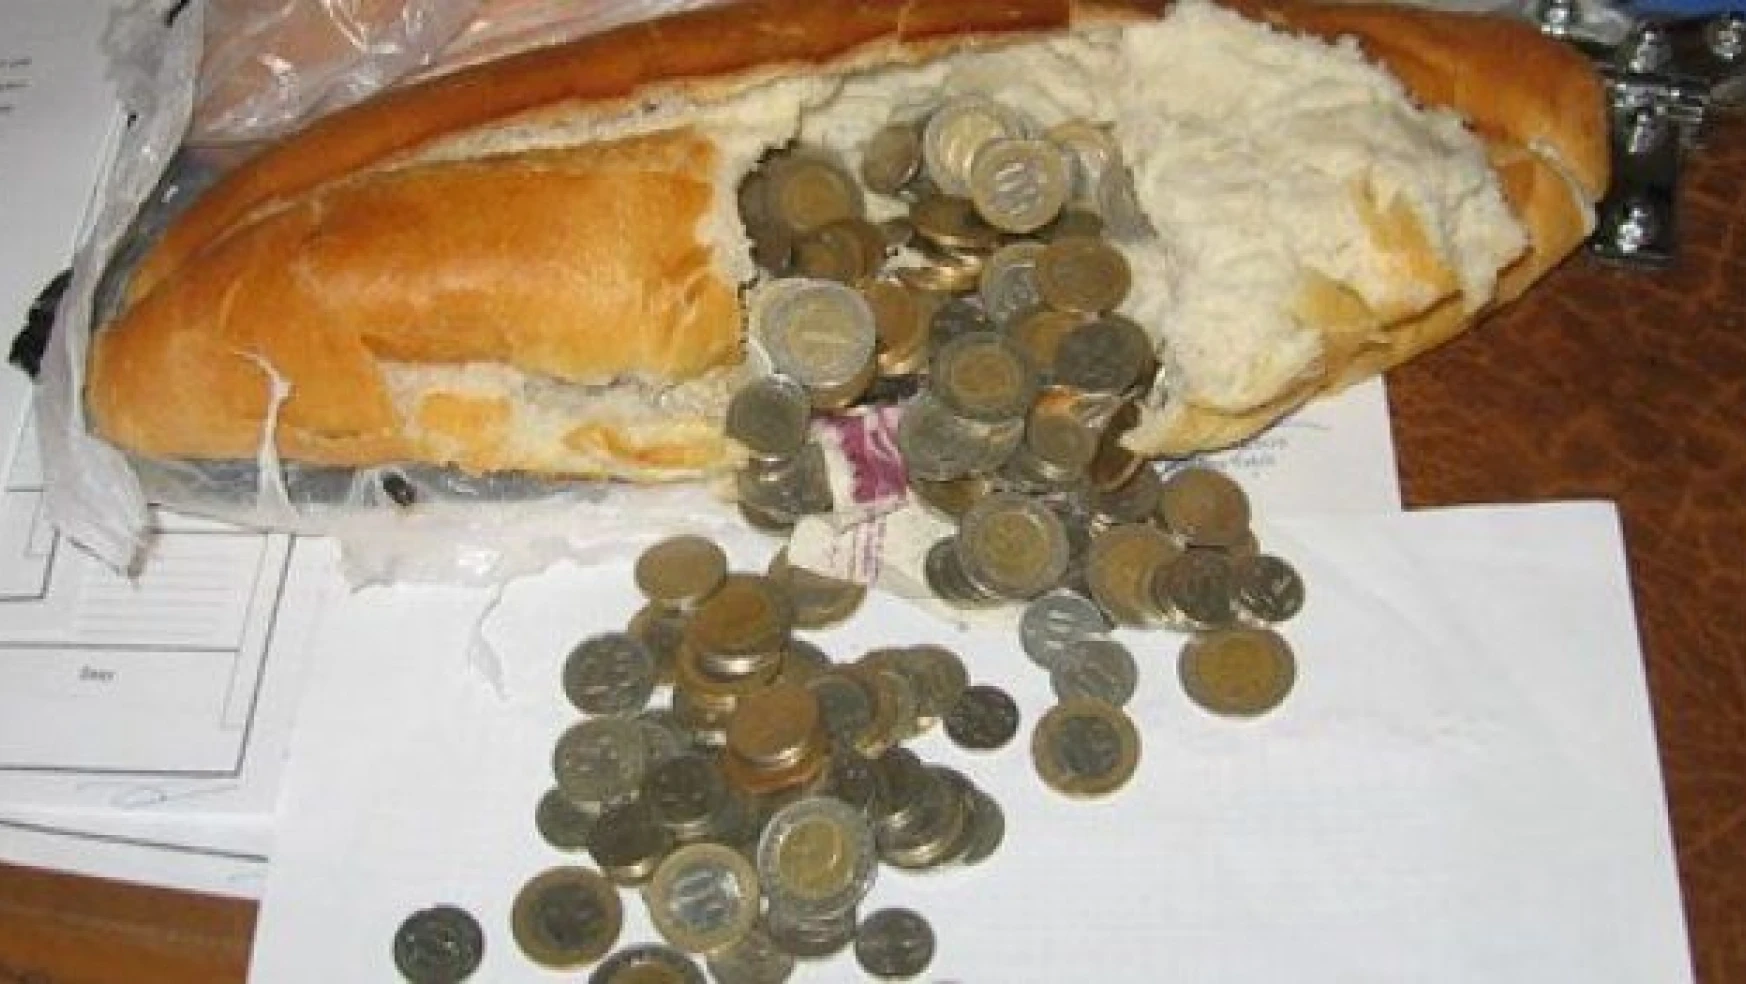 Dilencinin para saklama yöntemi şaşırttı! Ekmek arası para